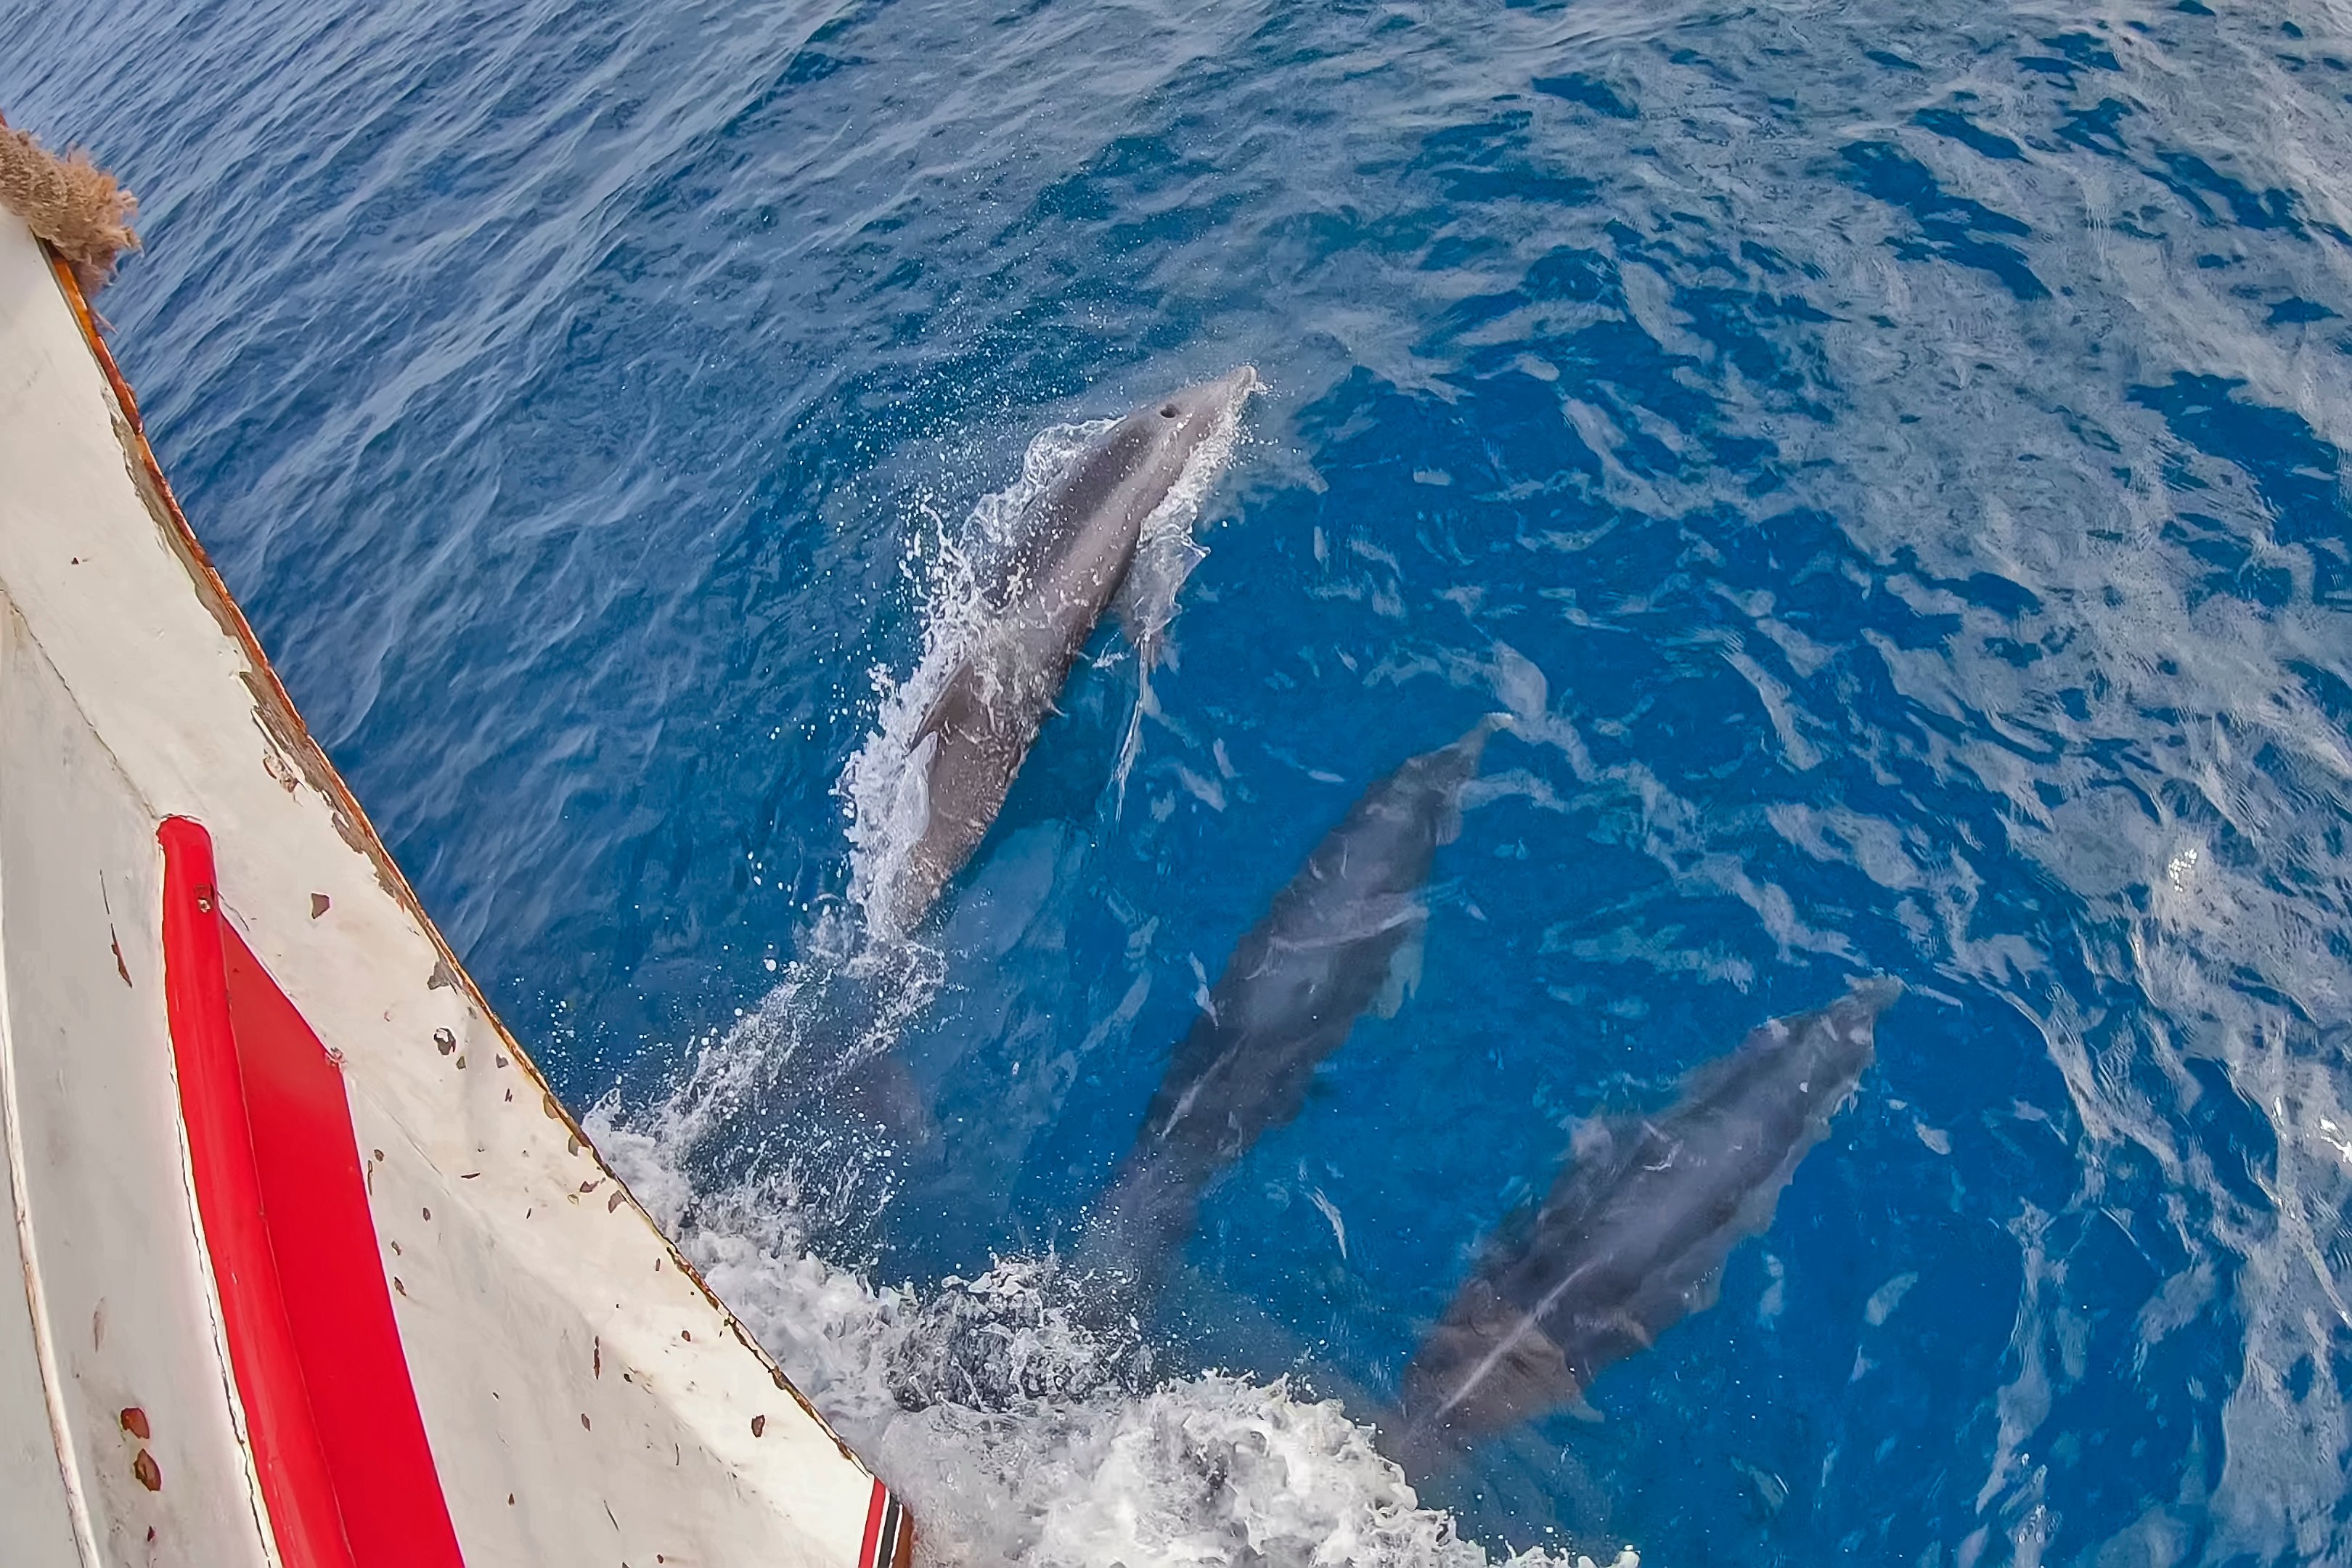 Golfinhos passam bem perto de embarcação utilizada por pesquisadores no Espírito Santo